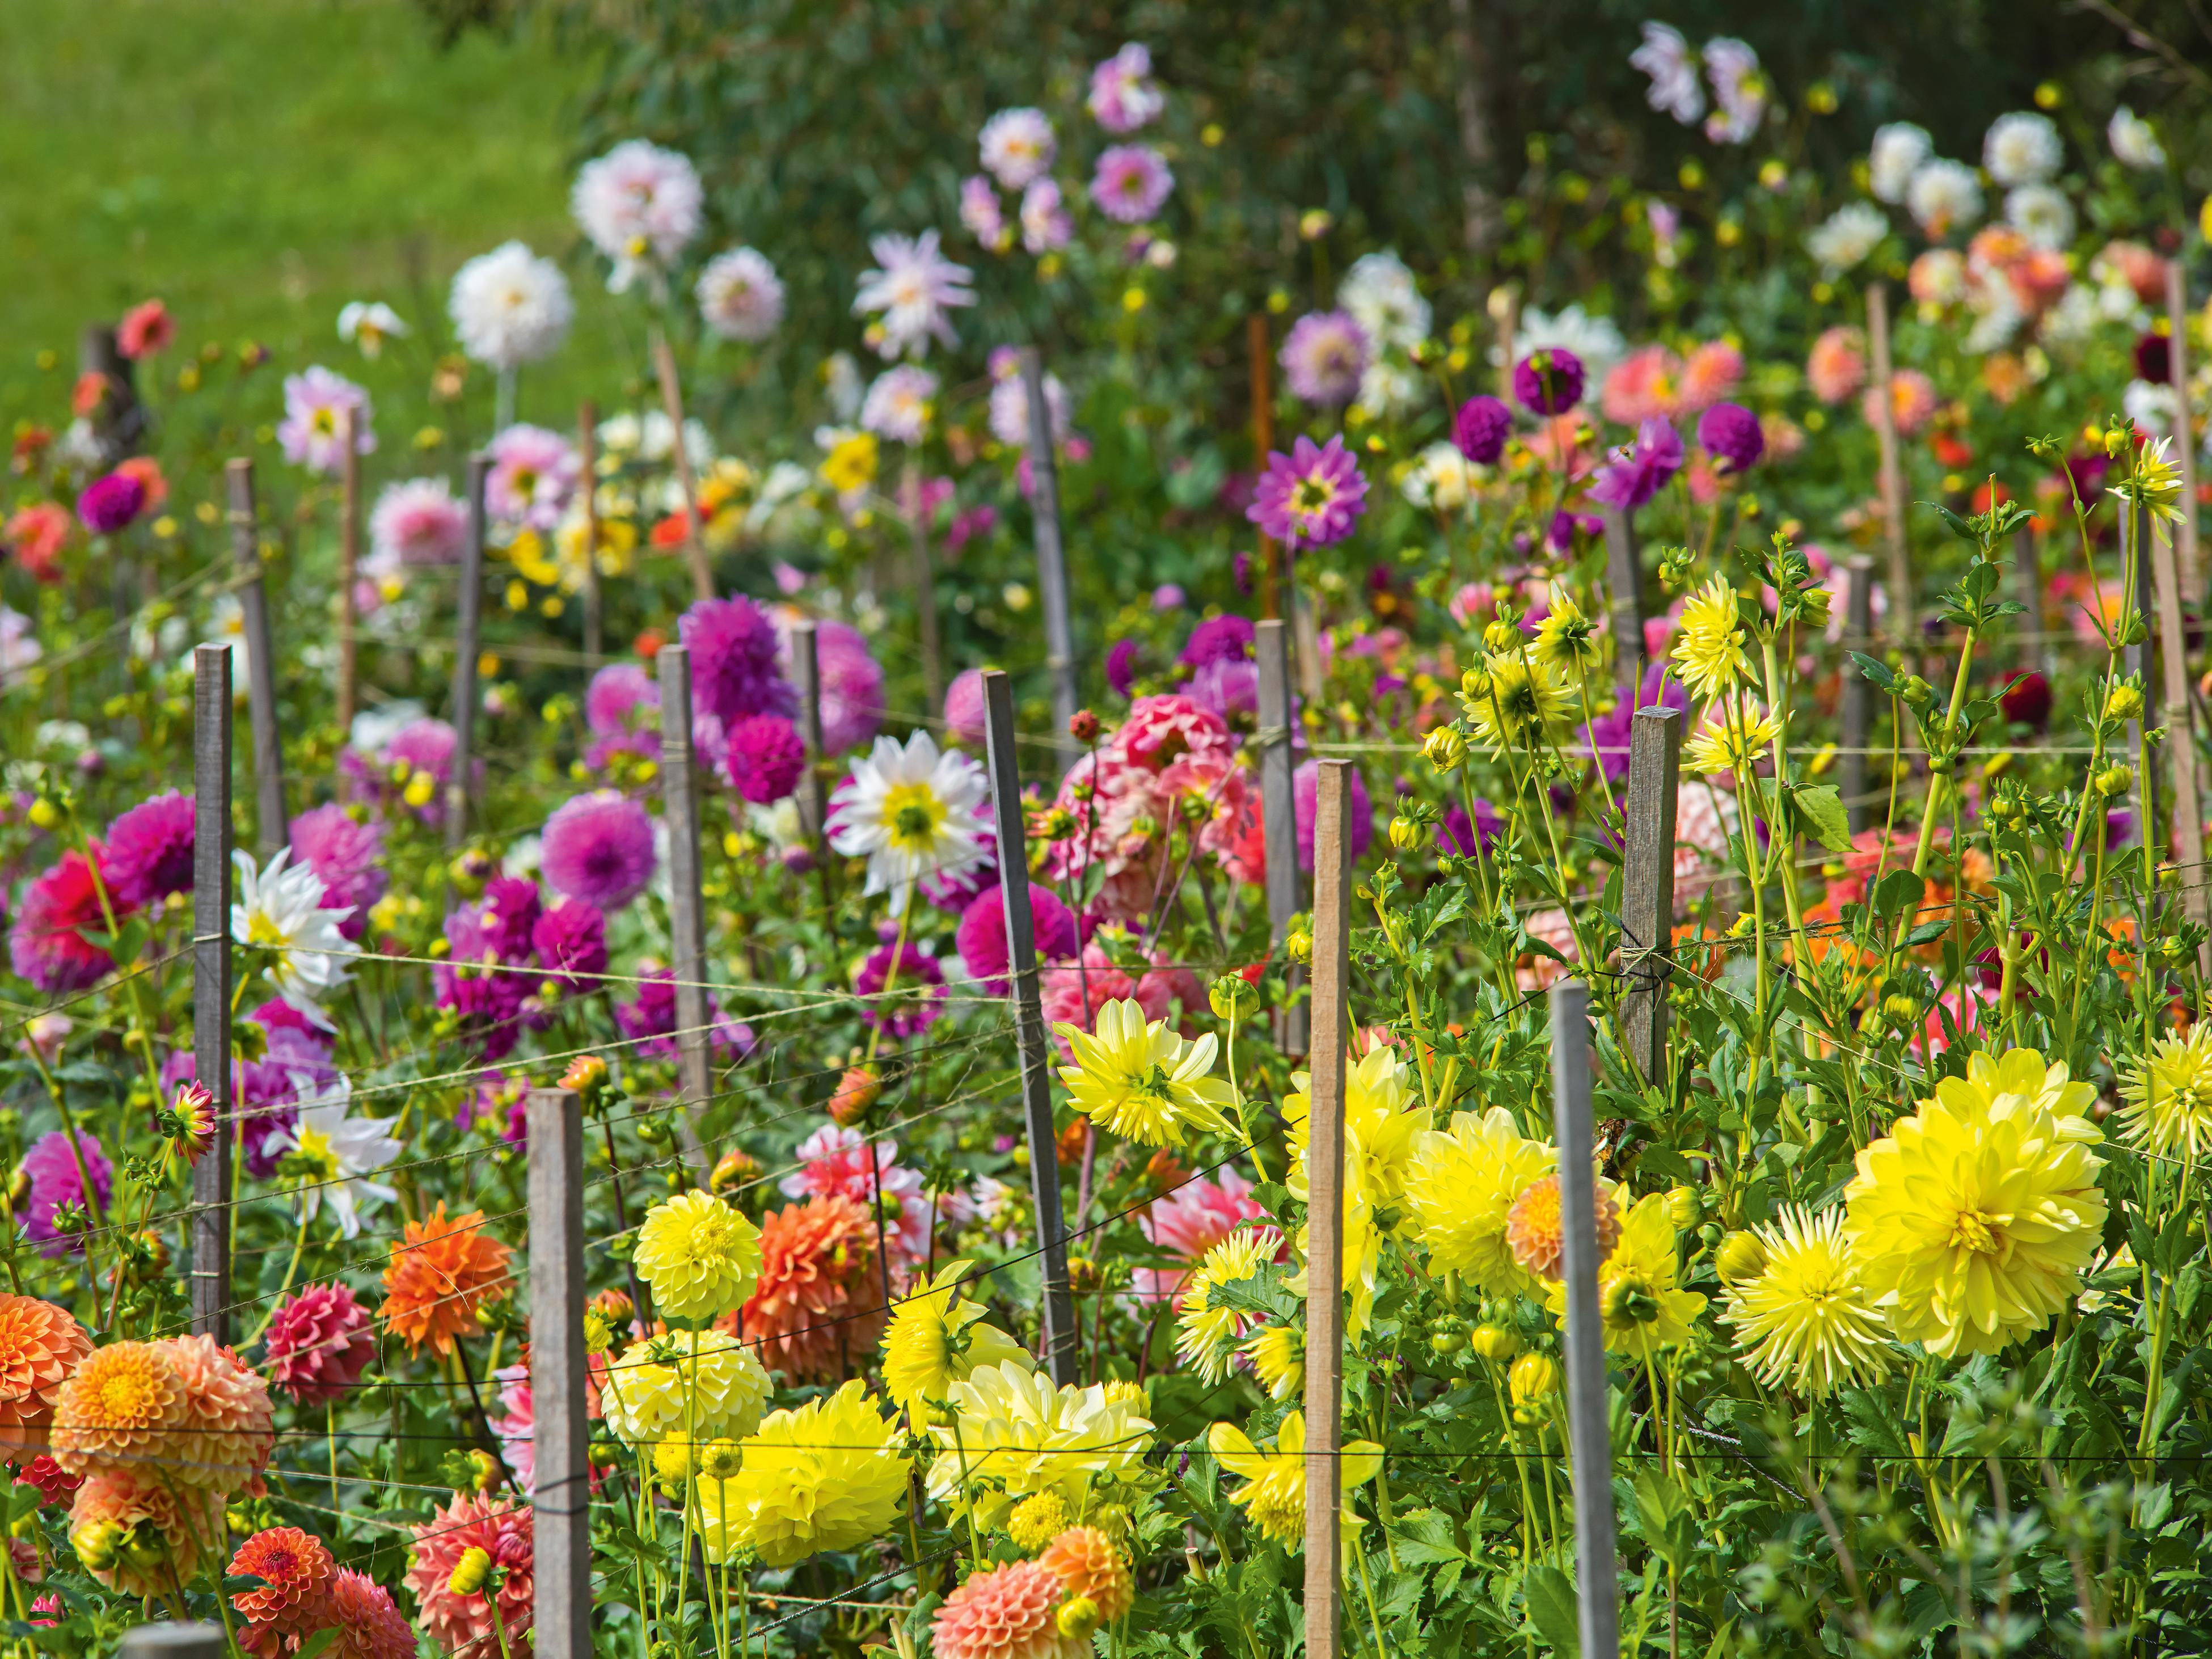 How To Start A Flower Garden: 13 Essential Steps - Bunnings New